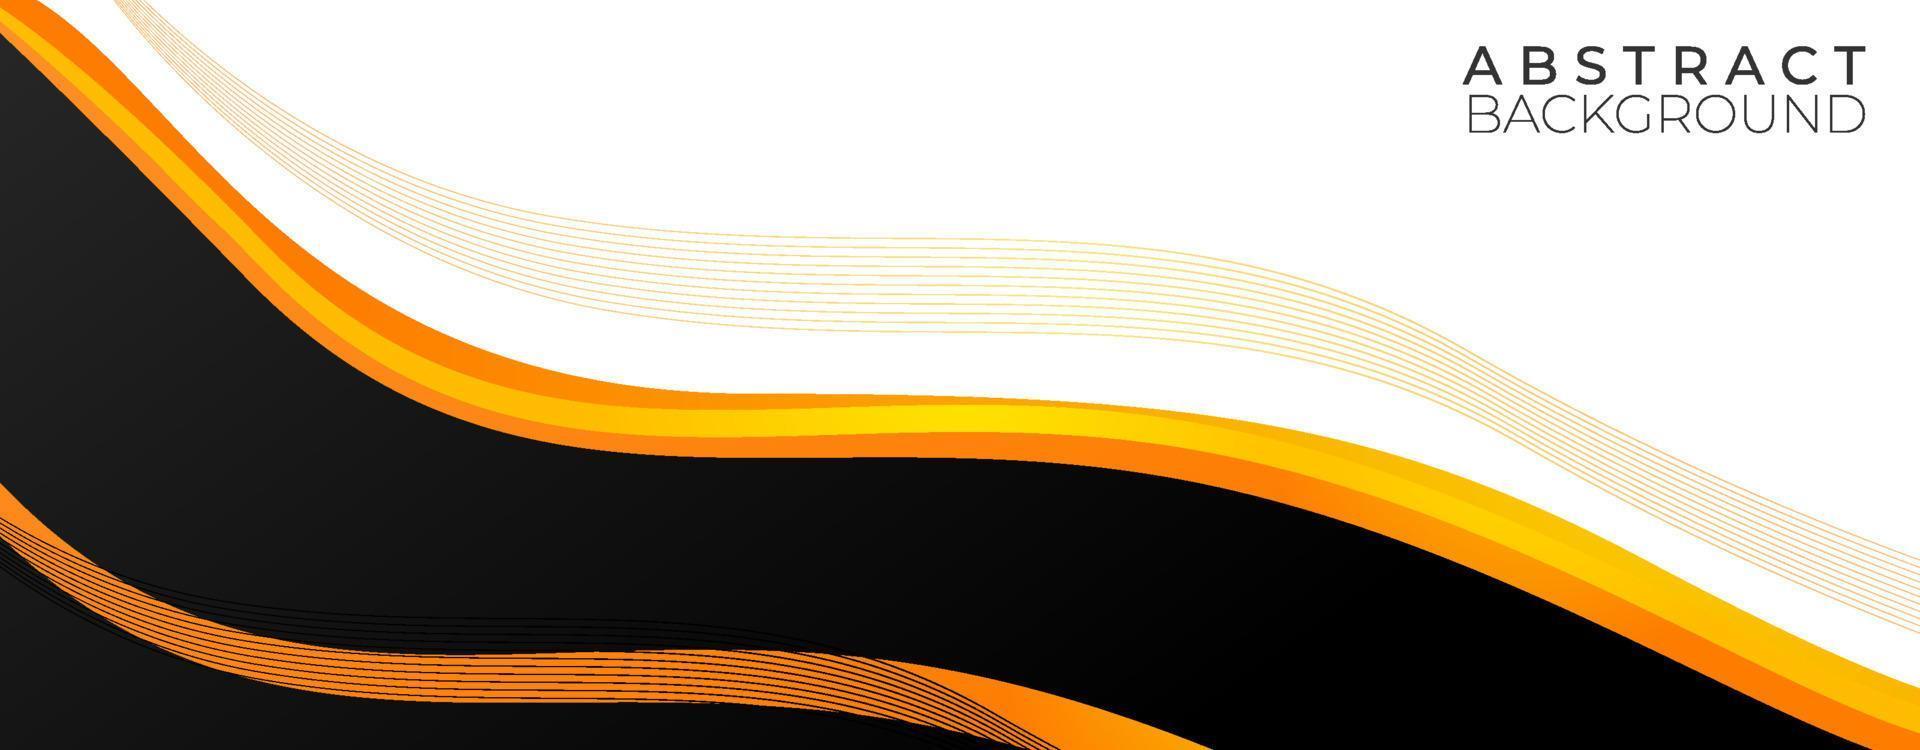 Welle gelber abstrakter Hintergrund vektor